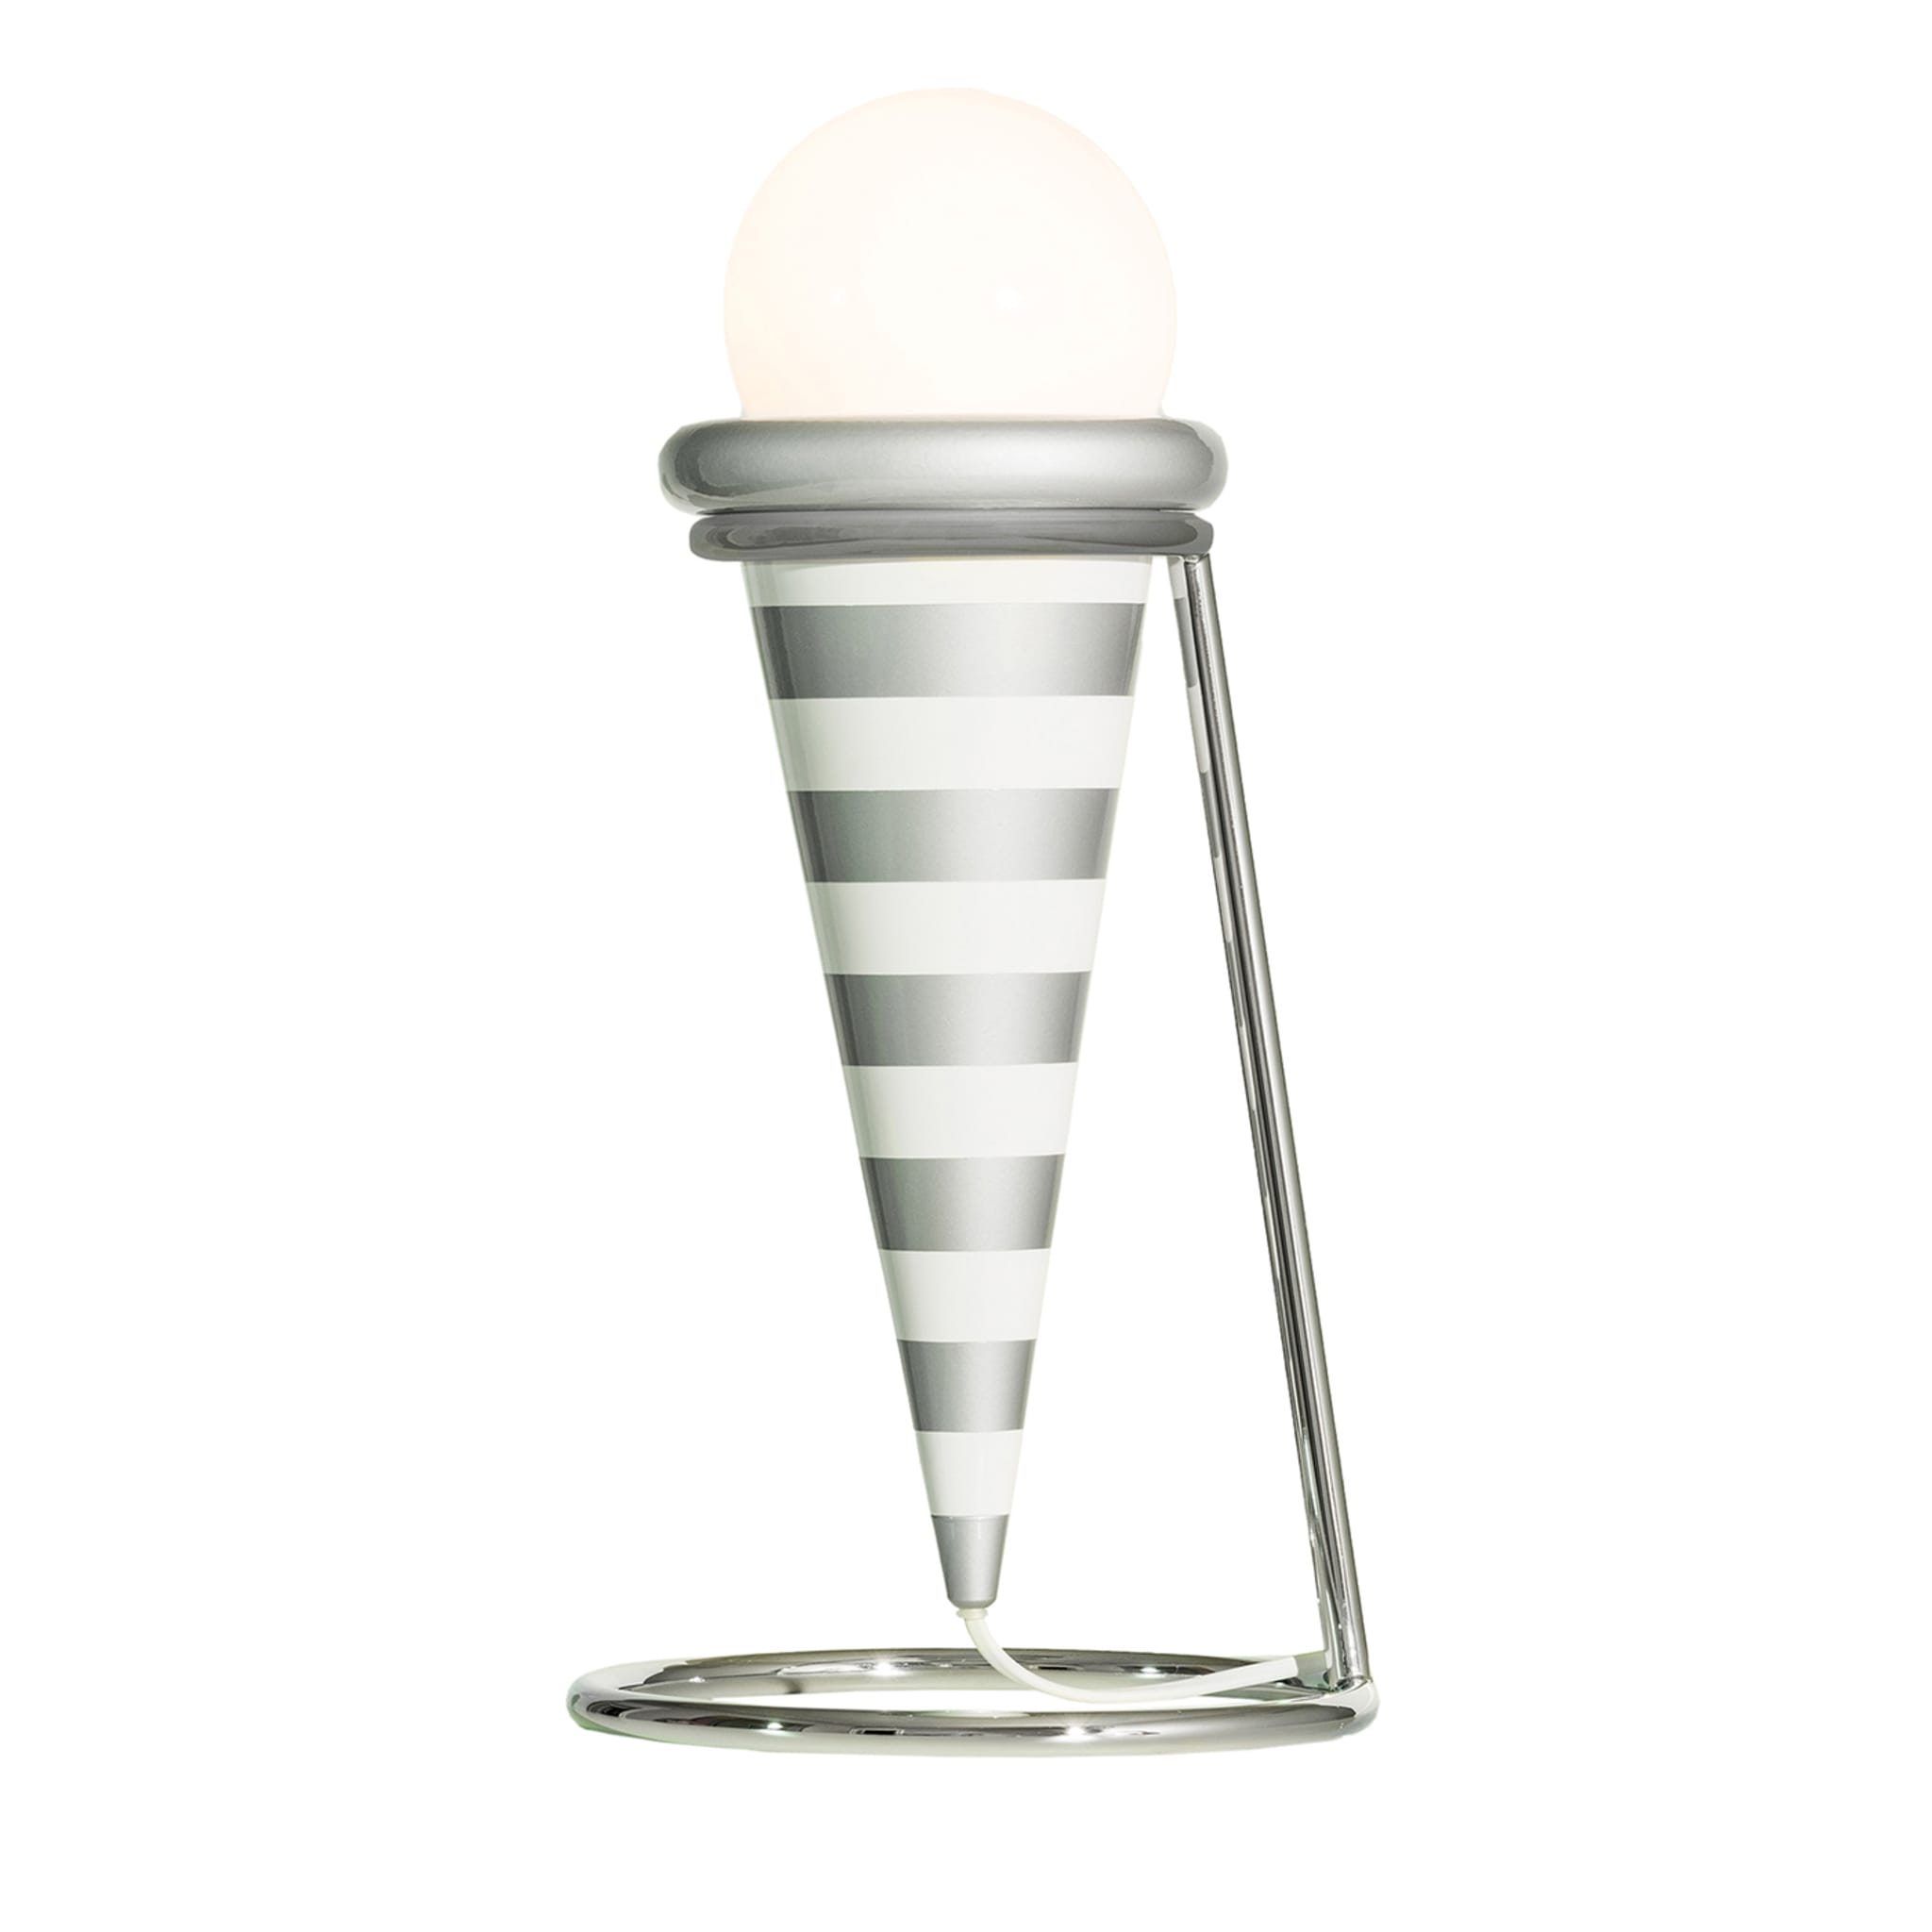 Gelato Striped Table Lamp by MASANORI UMEDA - Post Design - Main view